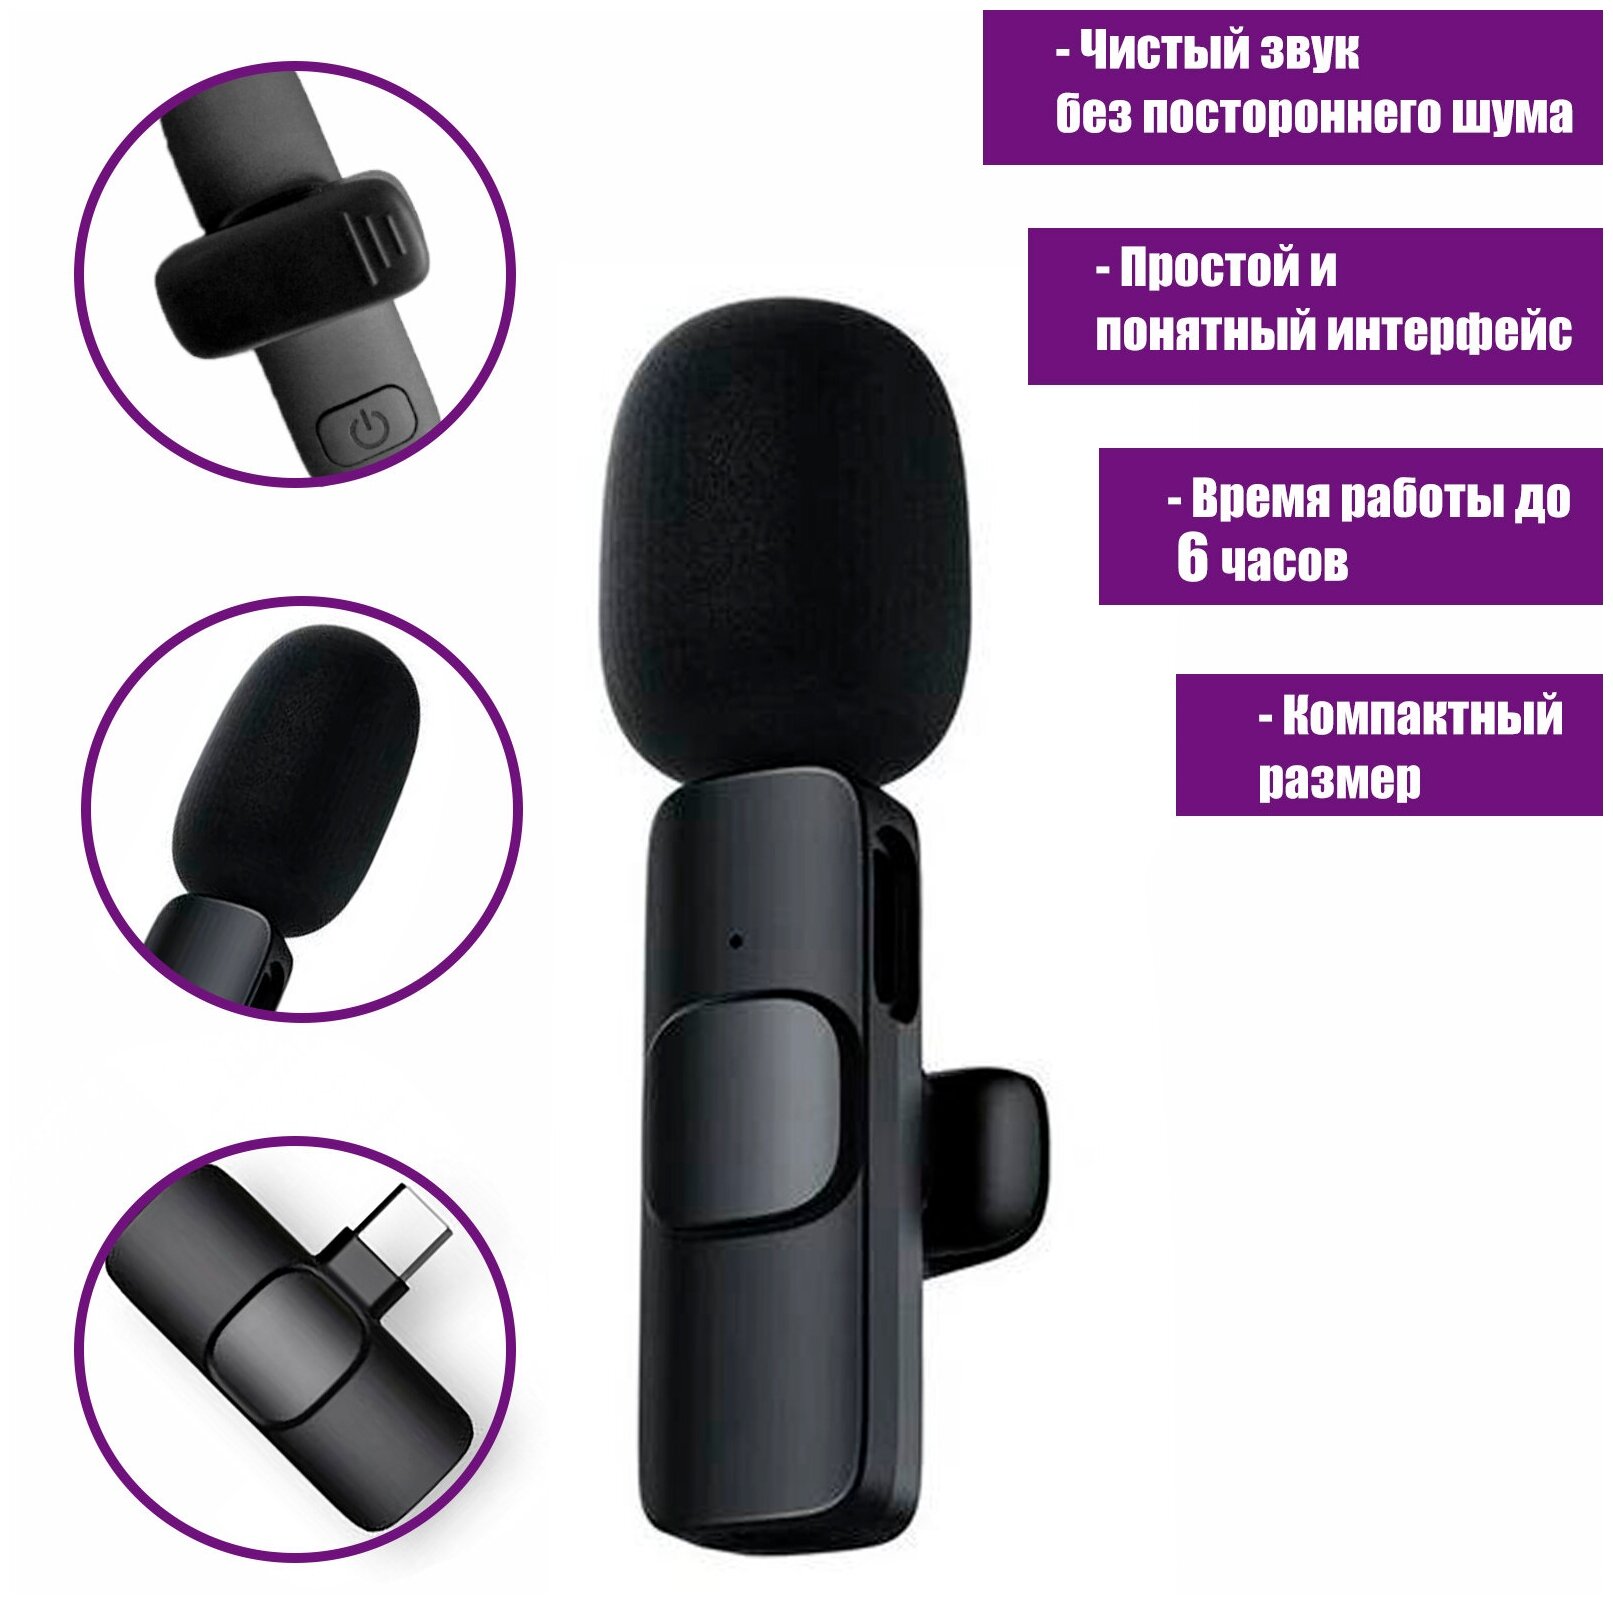 Беспроводной петличный микрофон K8 для устройств с разъемом Type-C